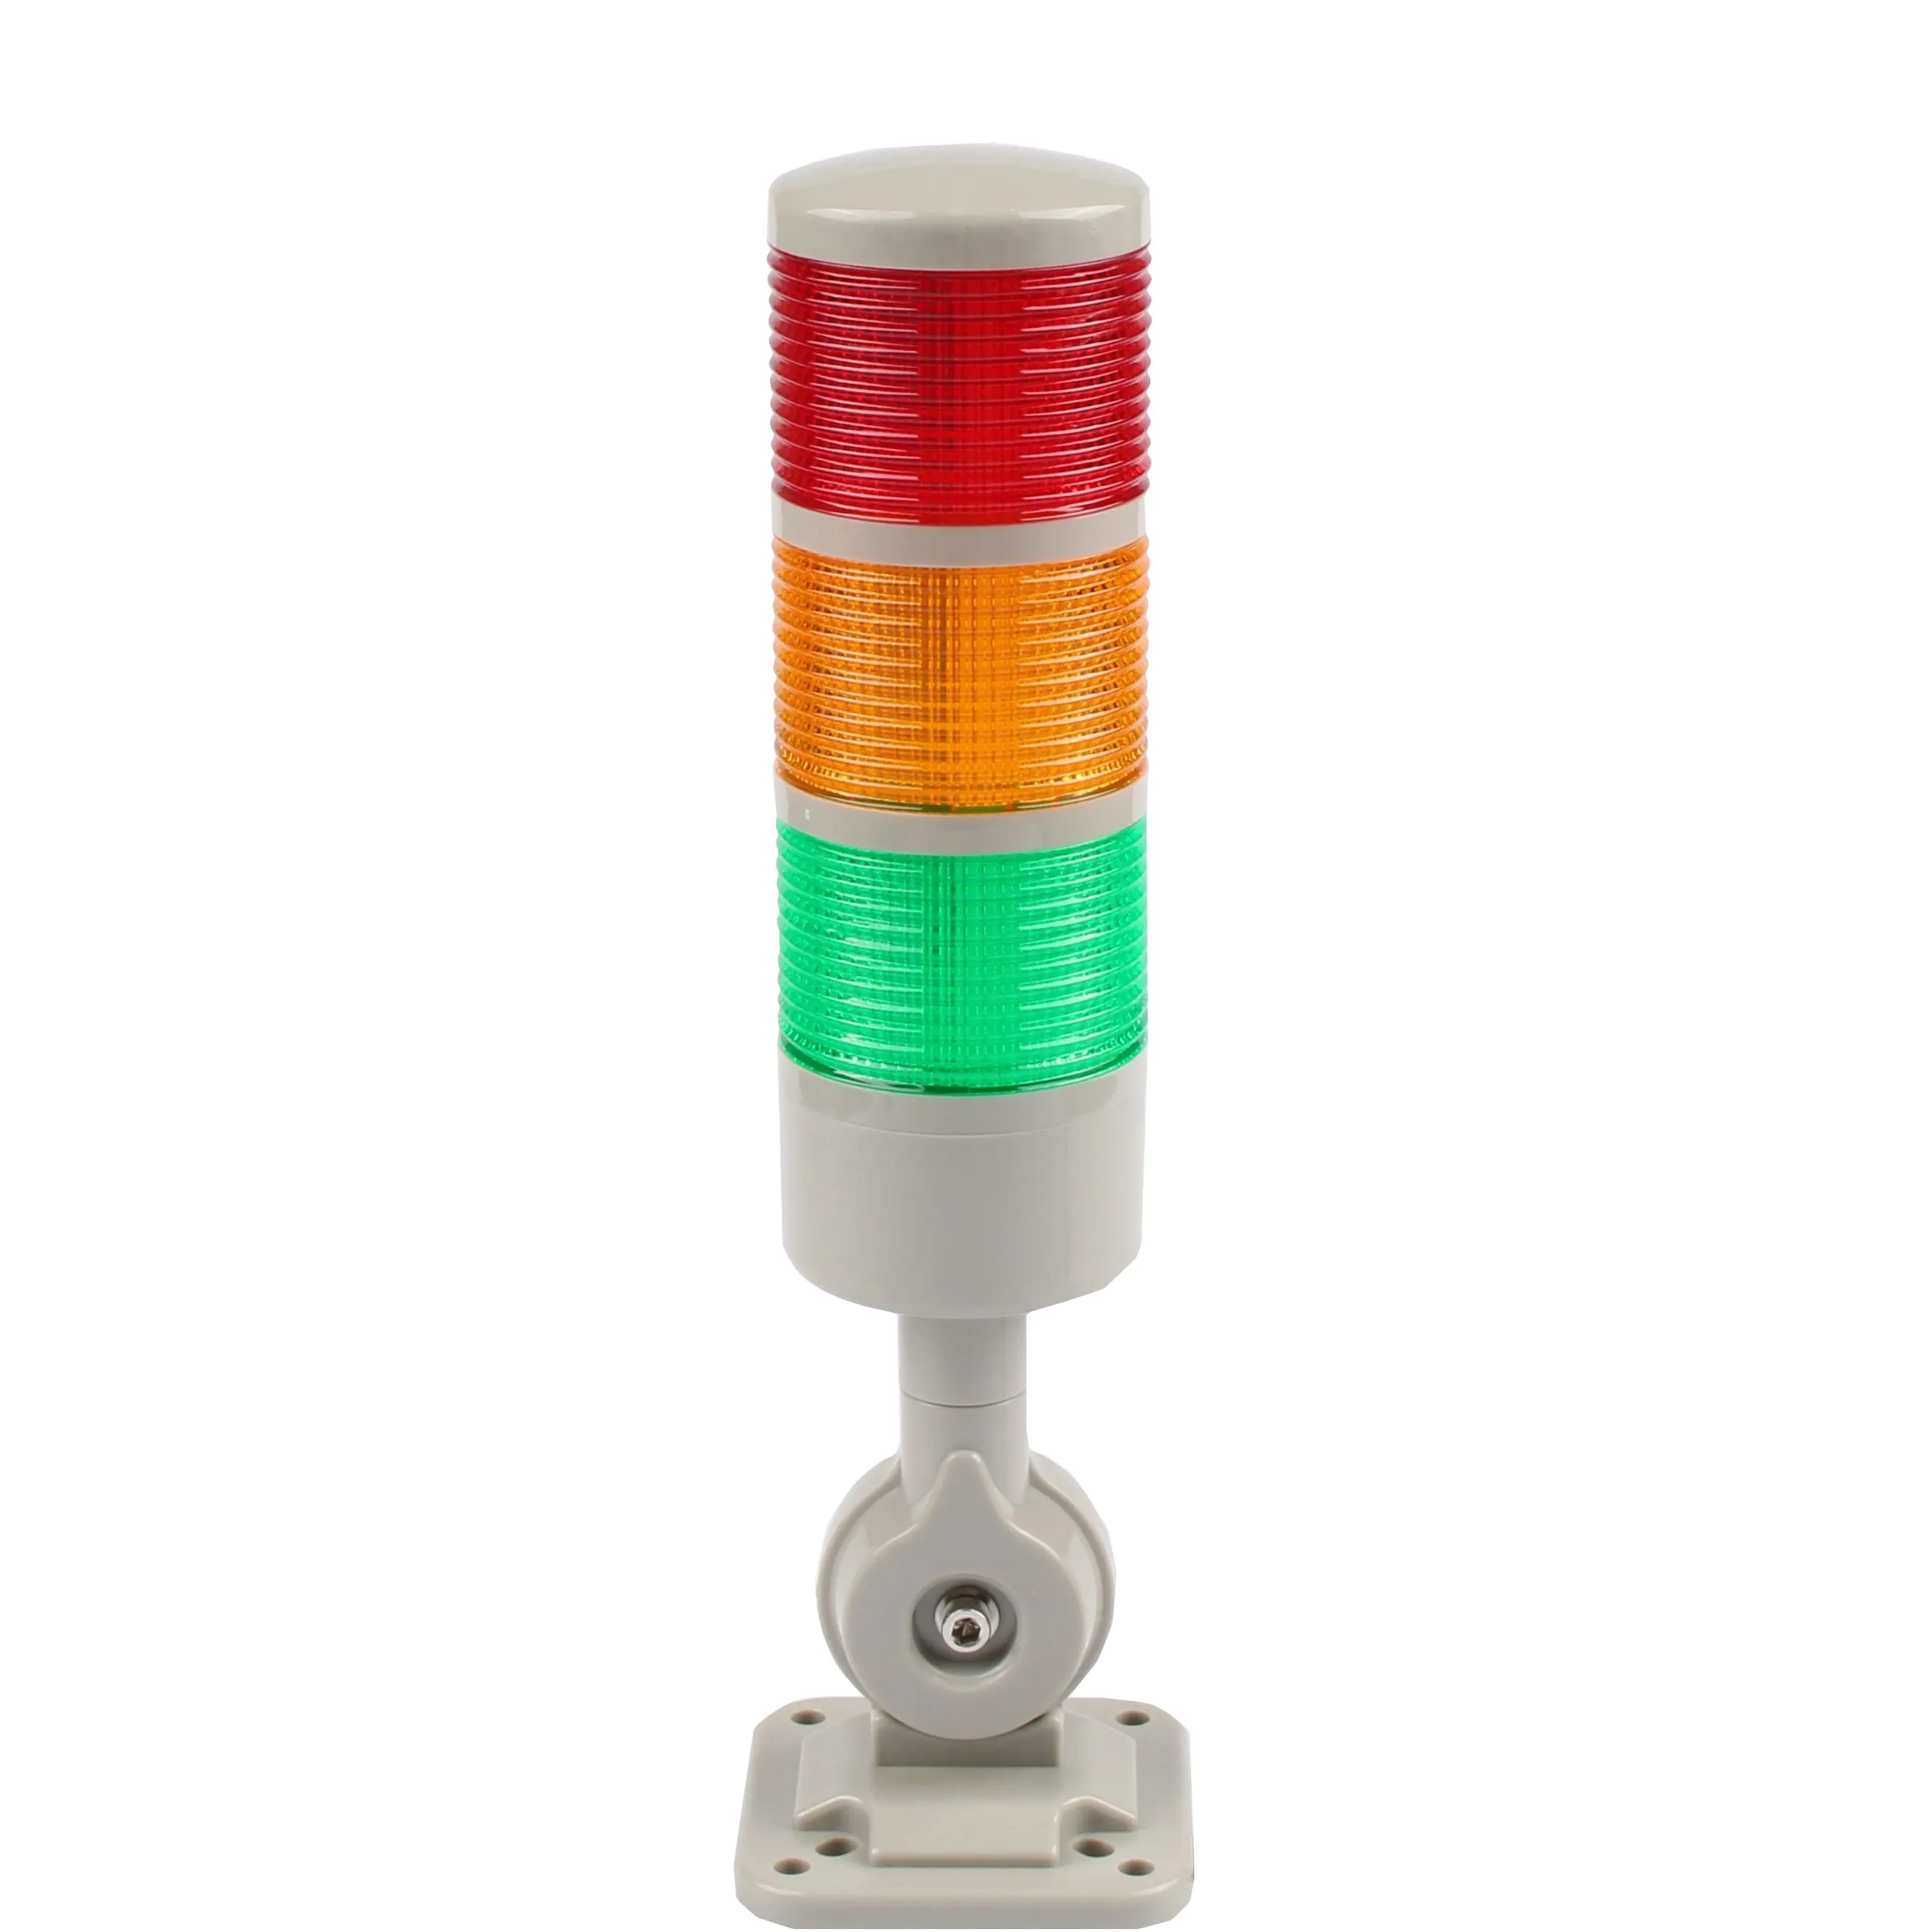 HY-Luz LED de advertencia de 3 capas, luz de tres colores, rojo, verde y amarillo, alarma multicapa, sonido y luz integrada